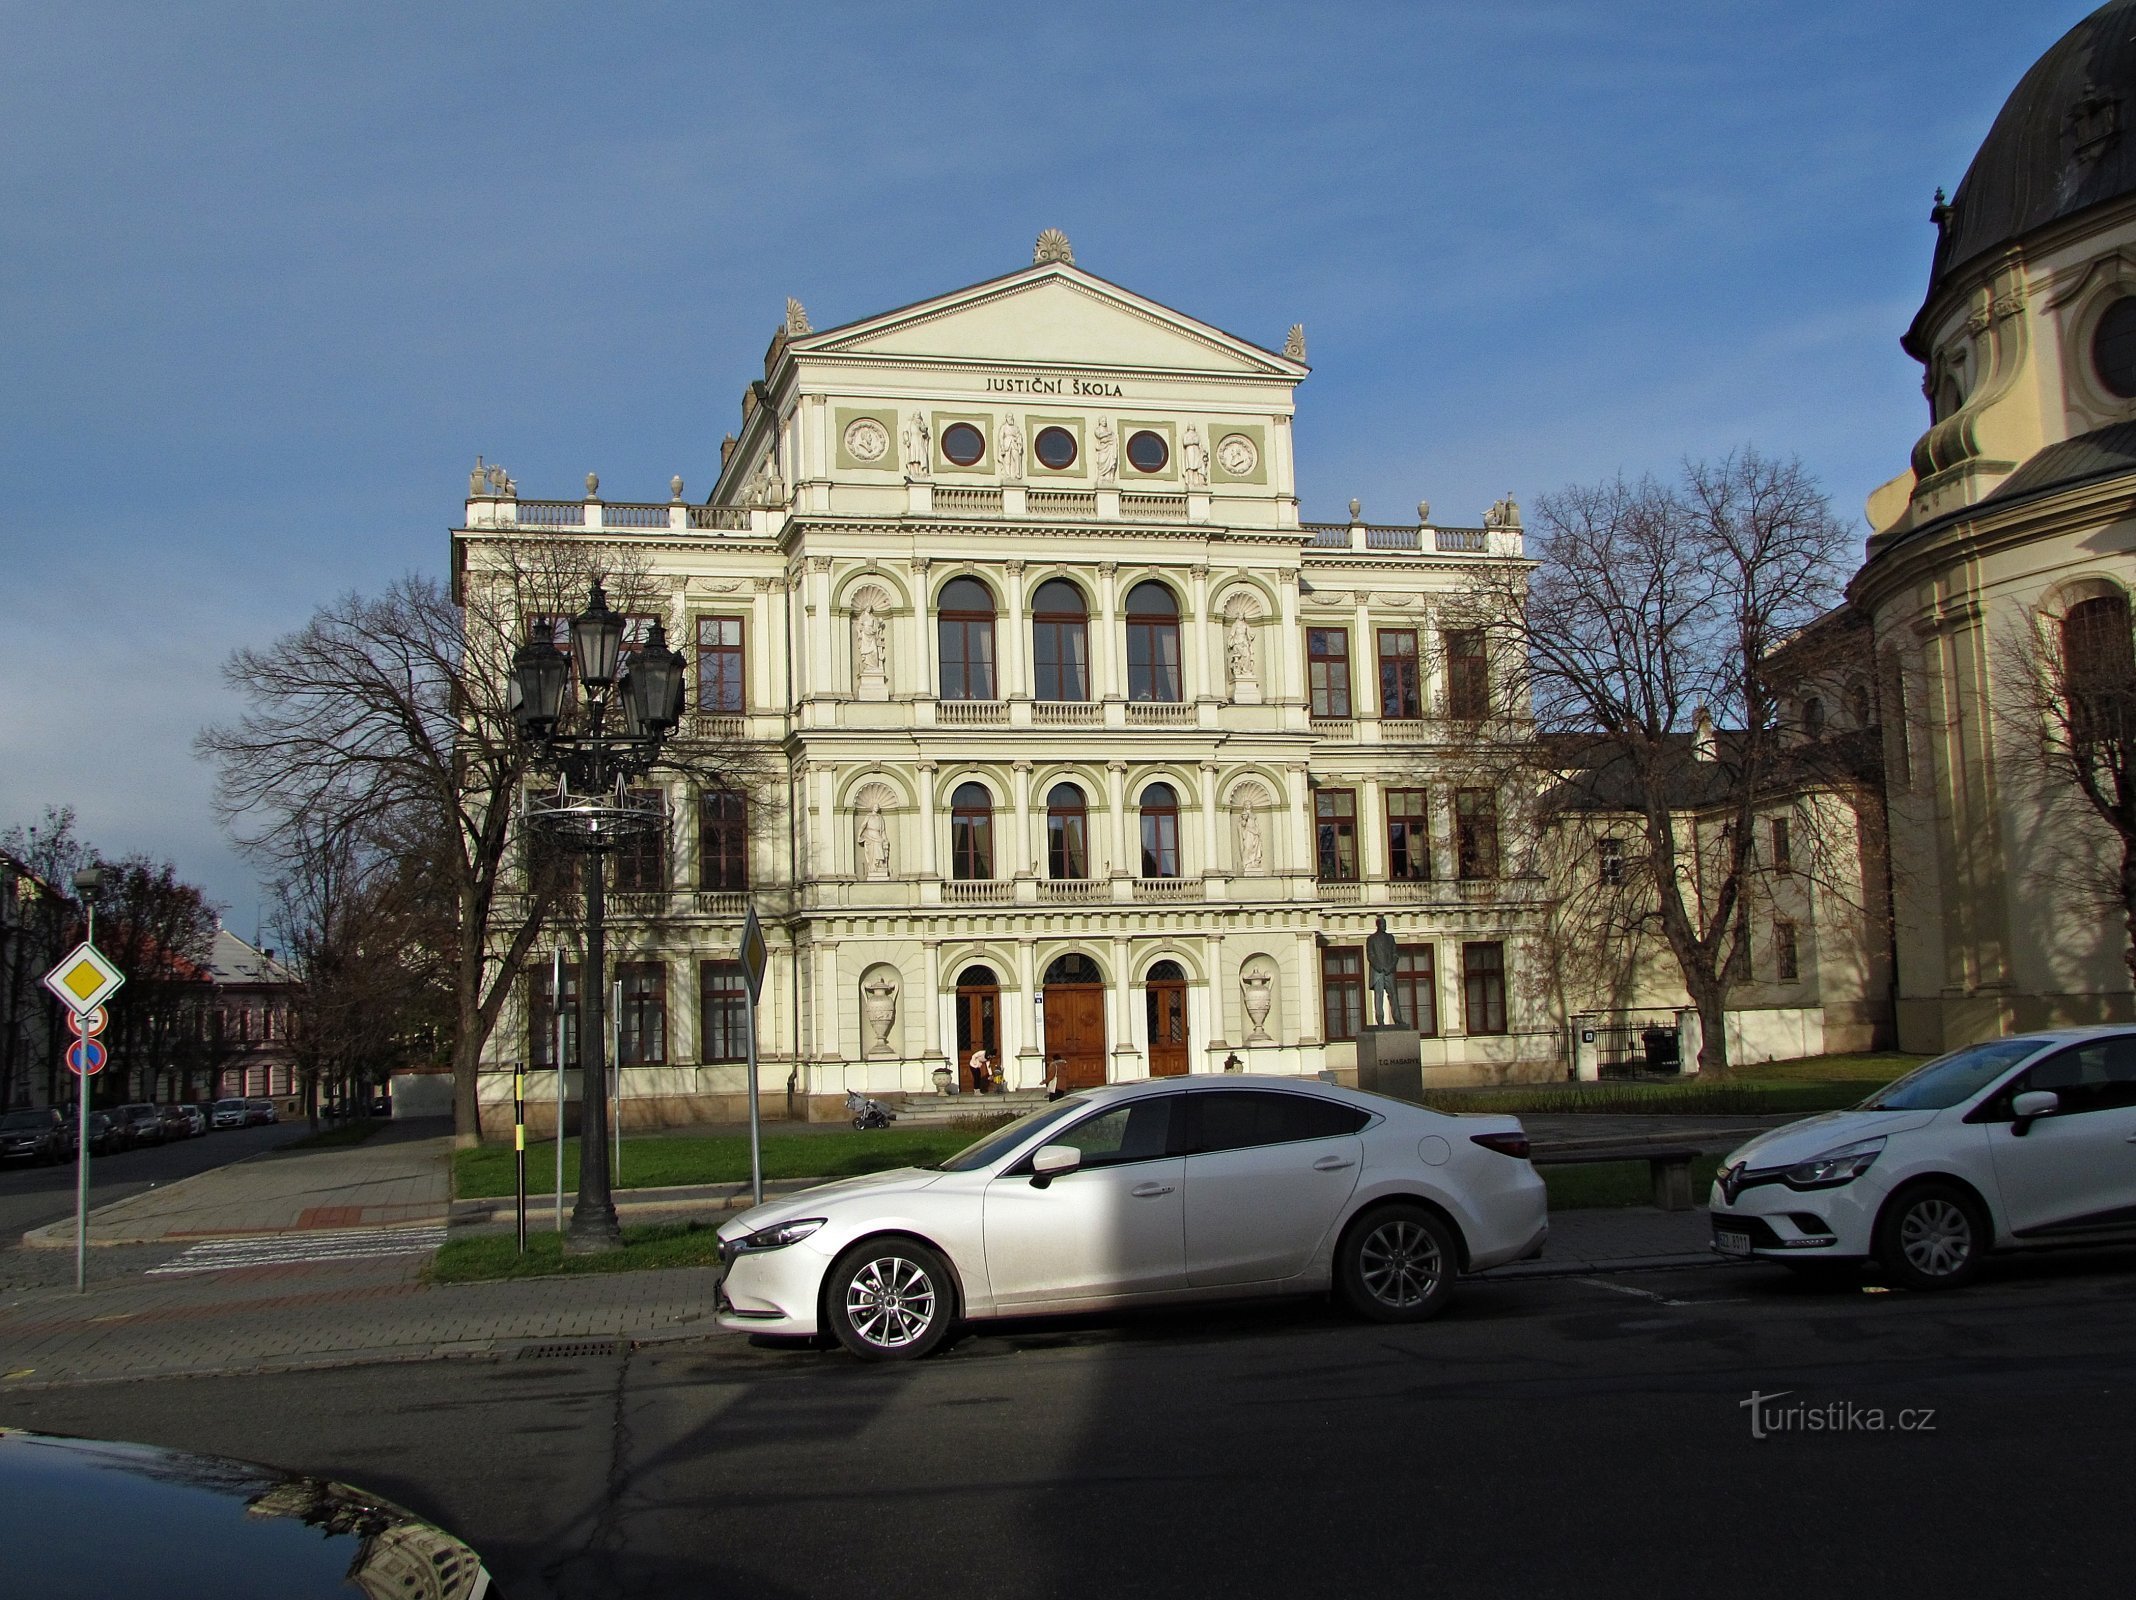 Kroměříž - Academy of Justice